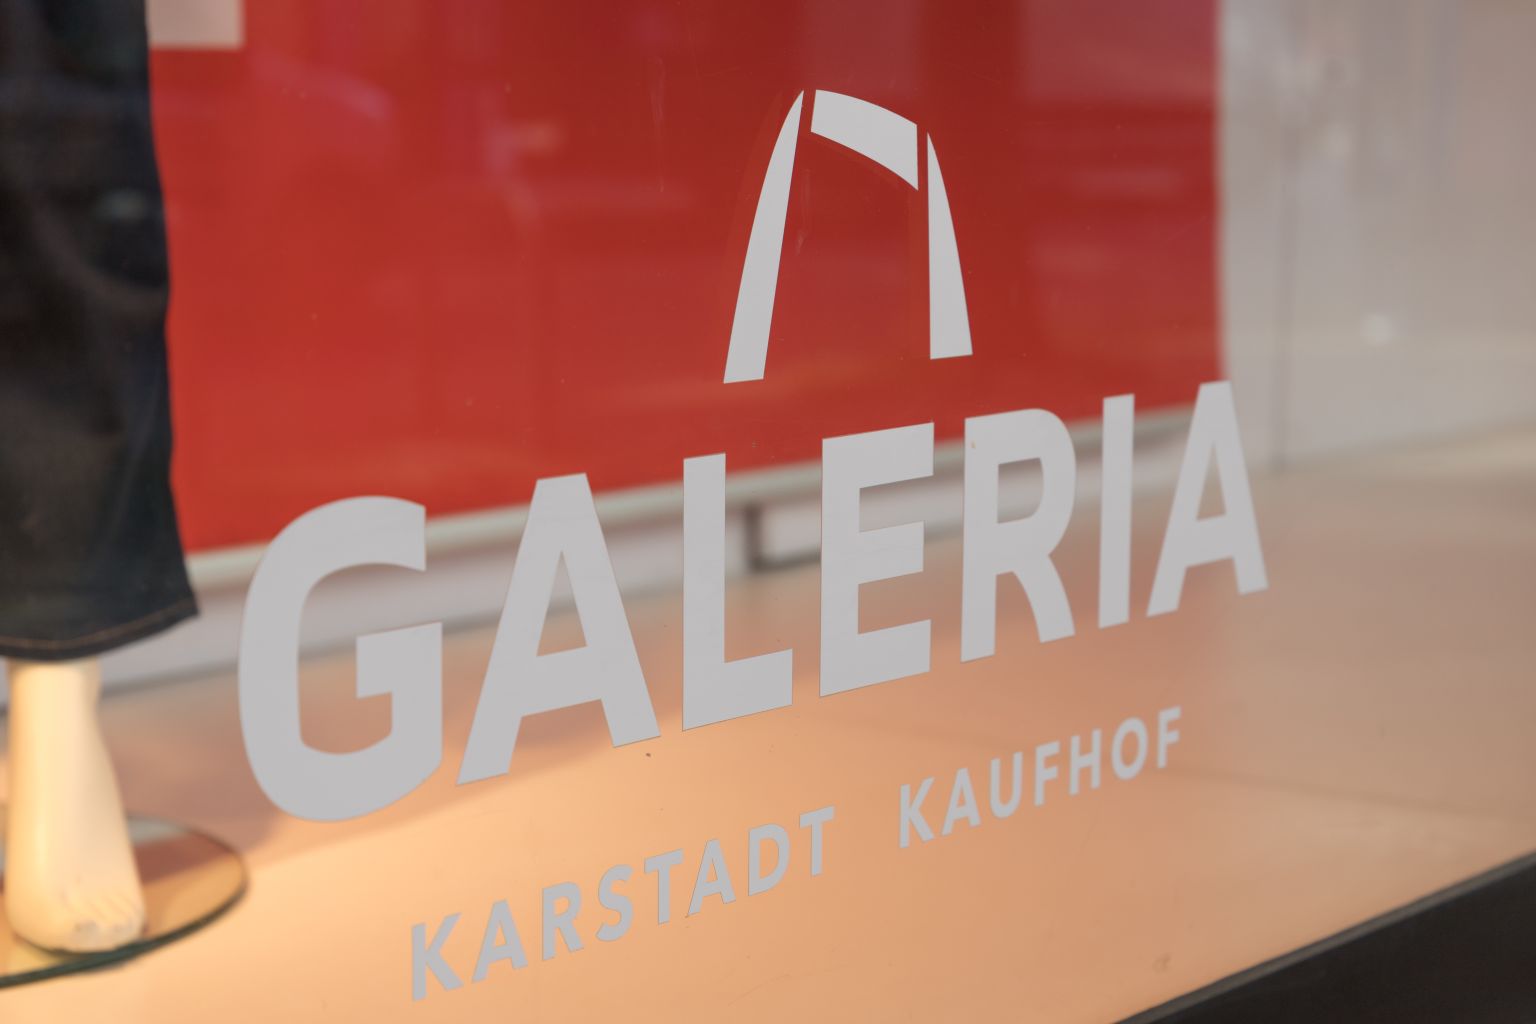 Galeria: Noch nicht konkret über Filialen ohne Zukunft entschieden